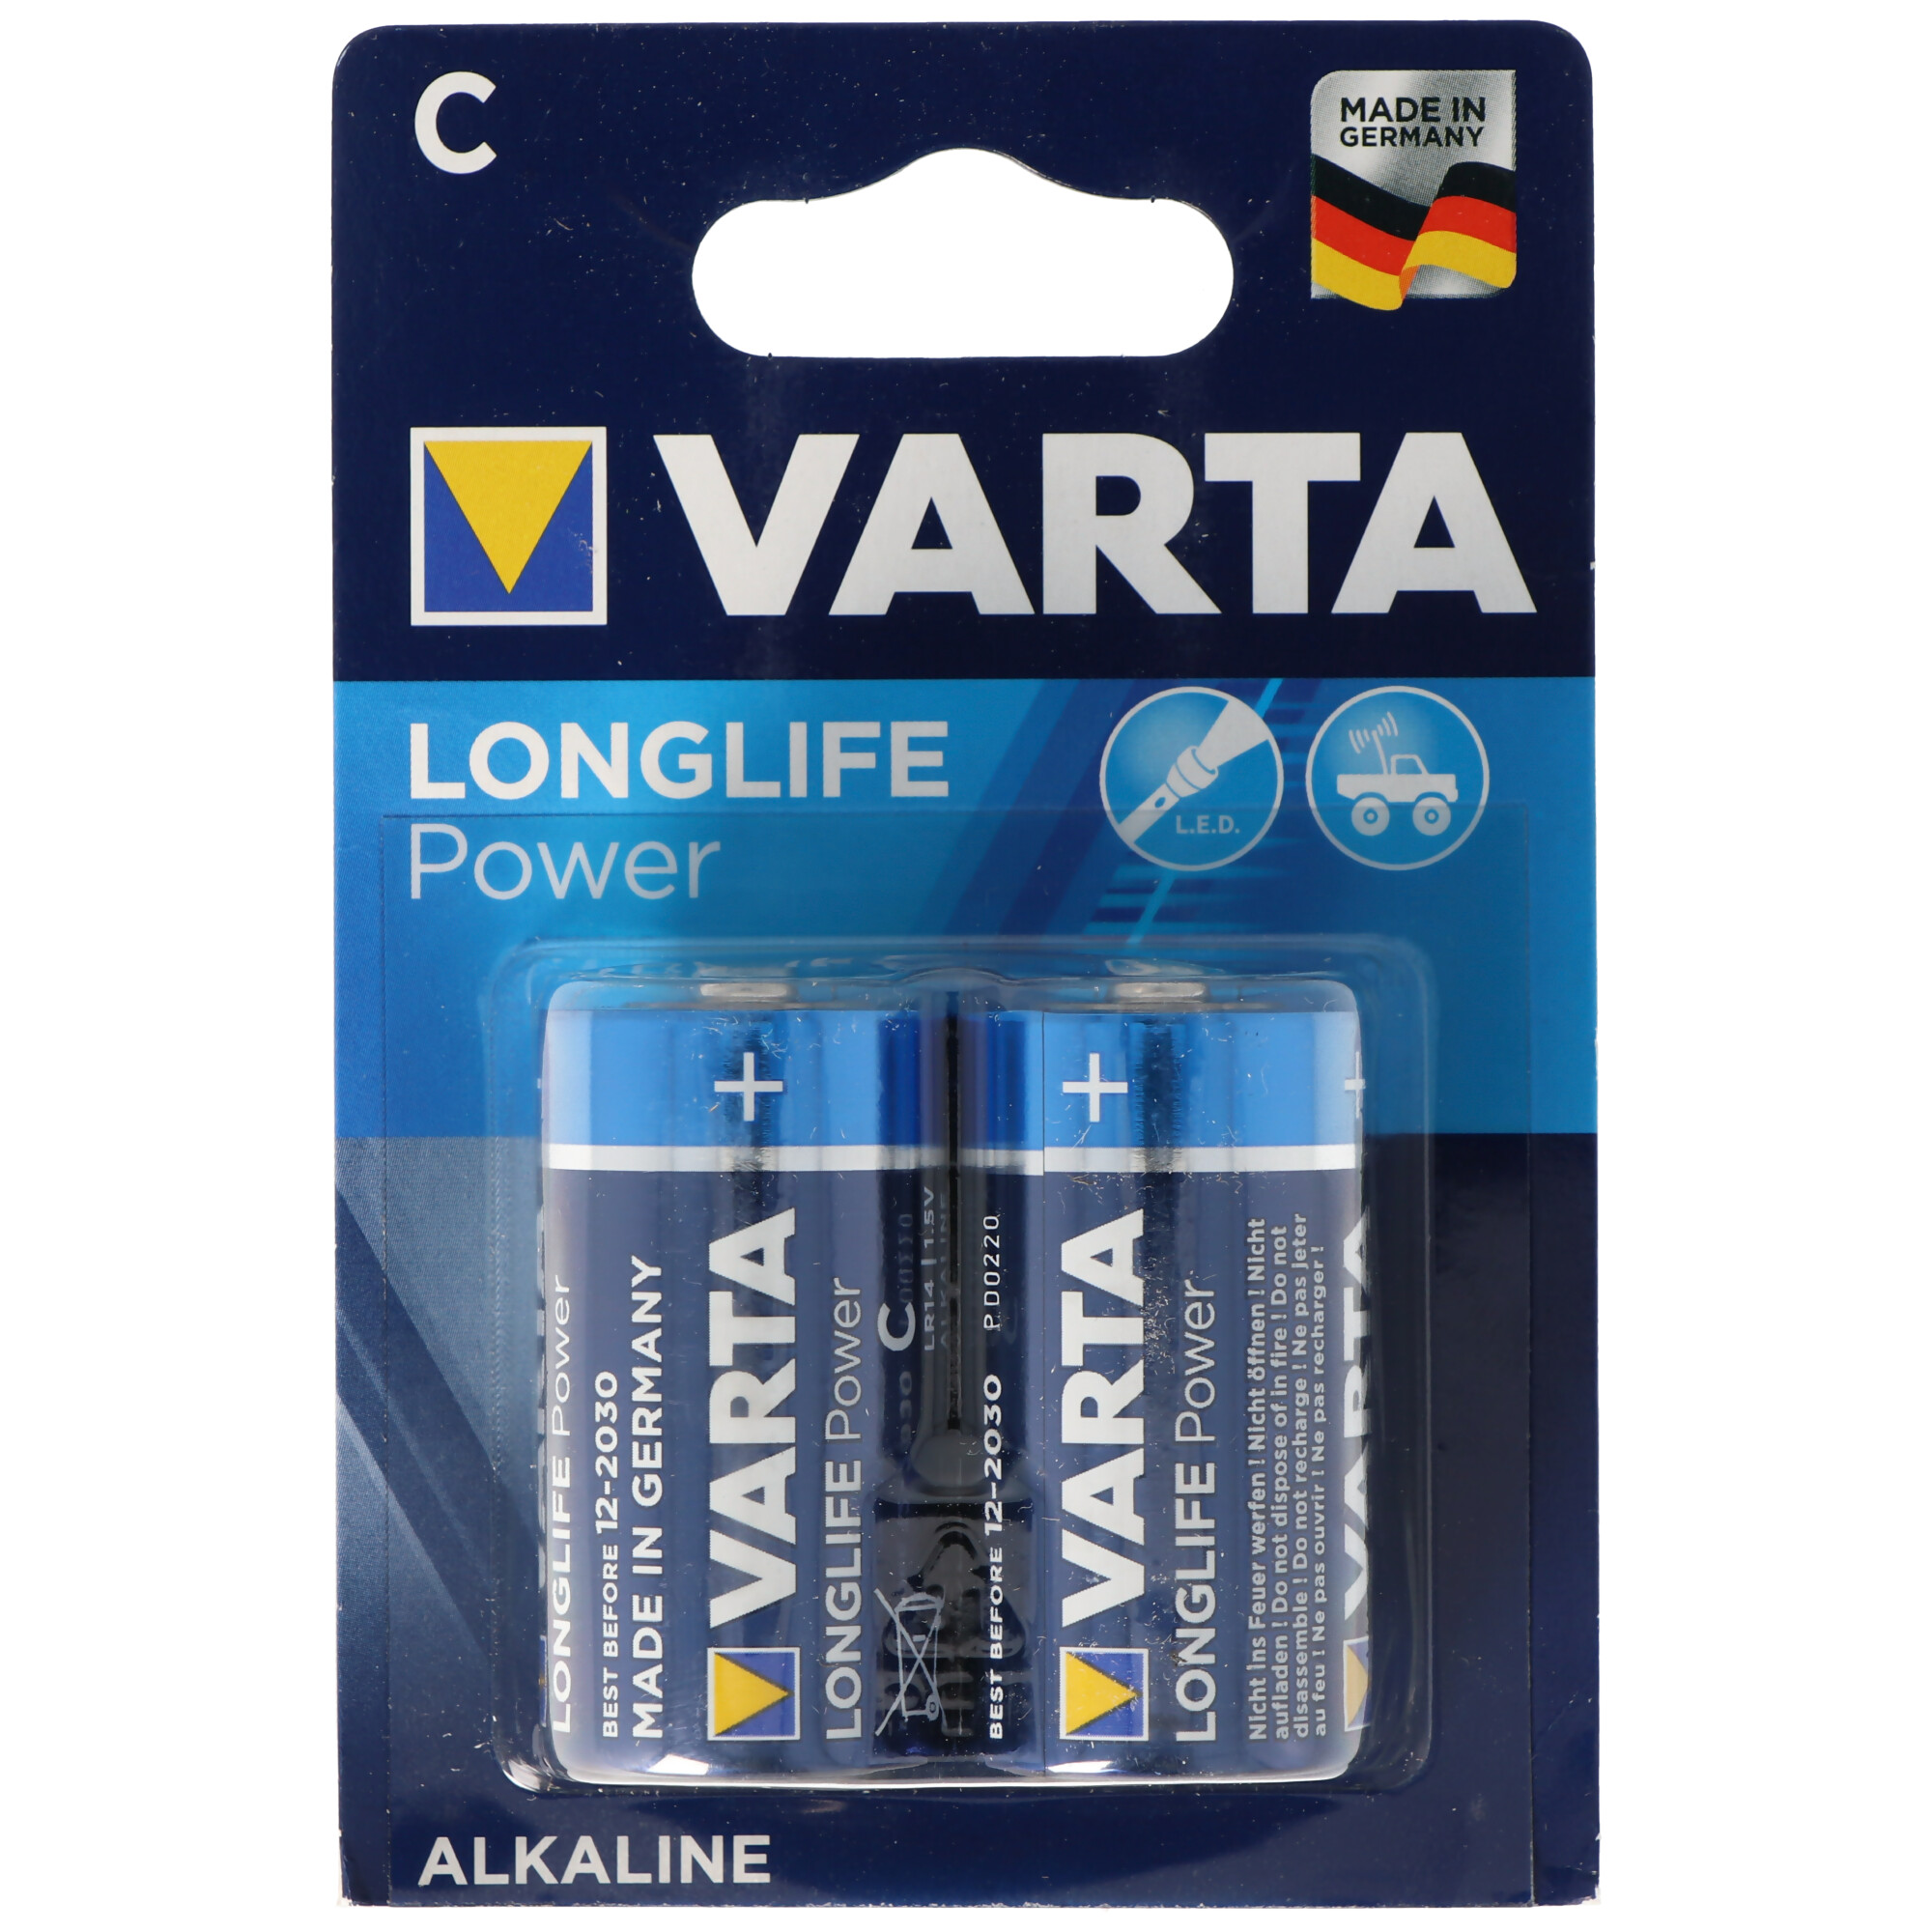 Varta Longlife Power (ehem. High Energy) Baby C 4914 Batterien 2er Blister Made in Germany